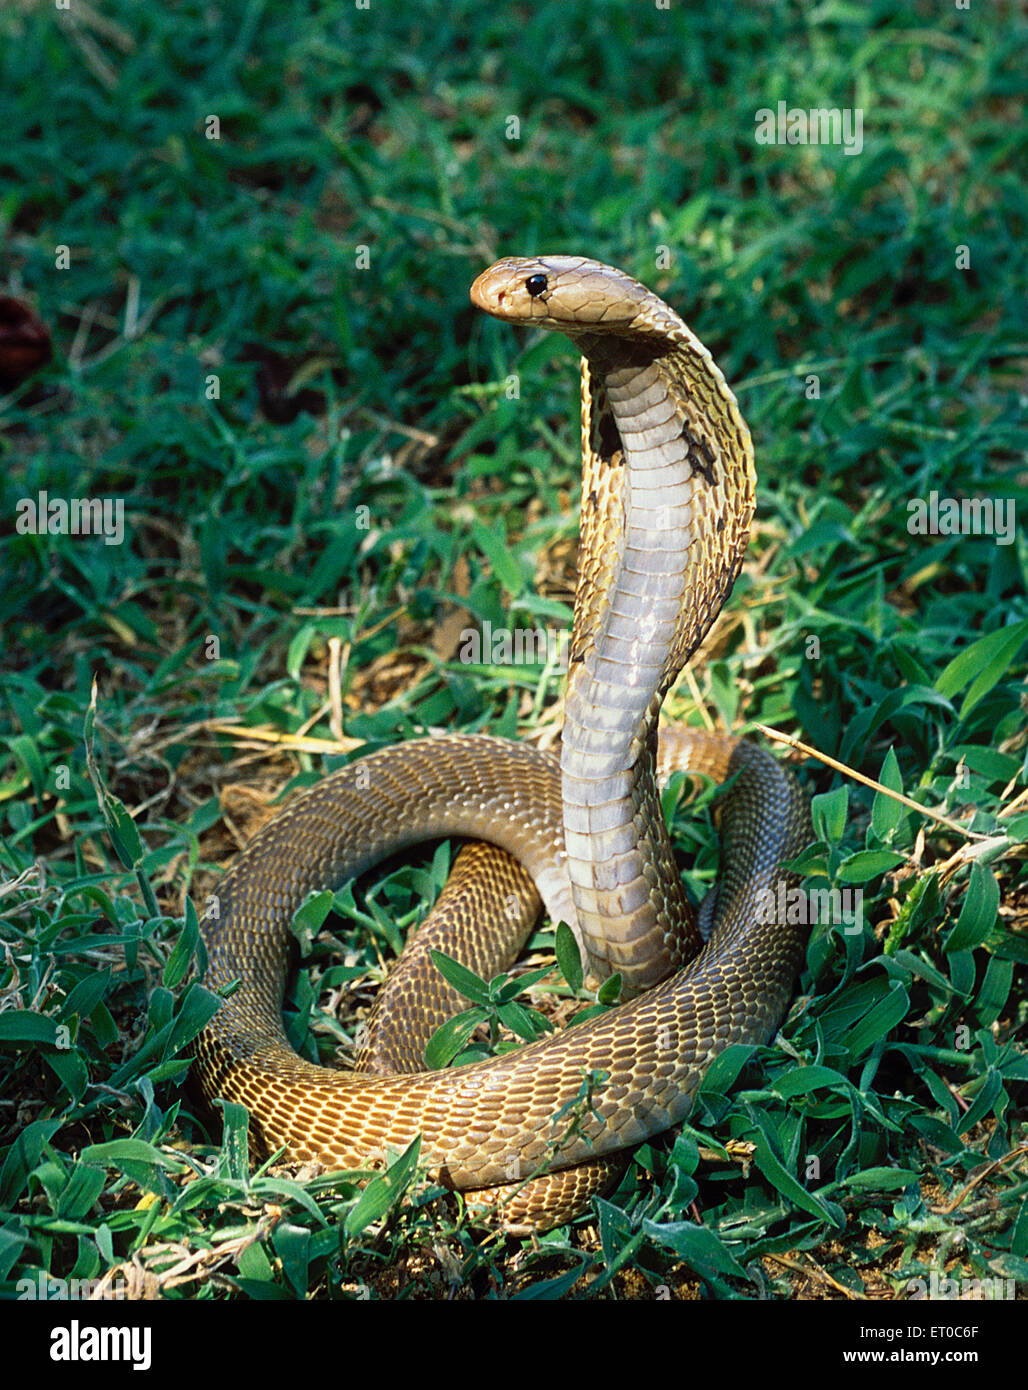 Serpent cobra, Cobra indien, nag, serpent venimeux, naja naja ; Tamil Nadu ; Inde, asie Banque D'Images